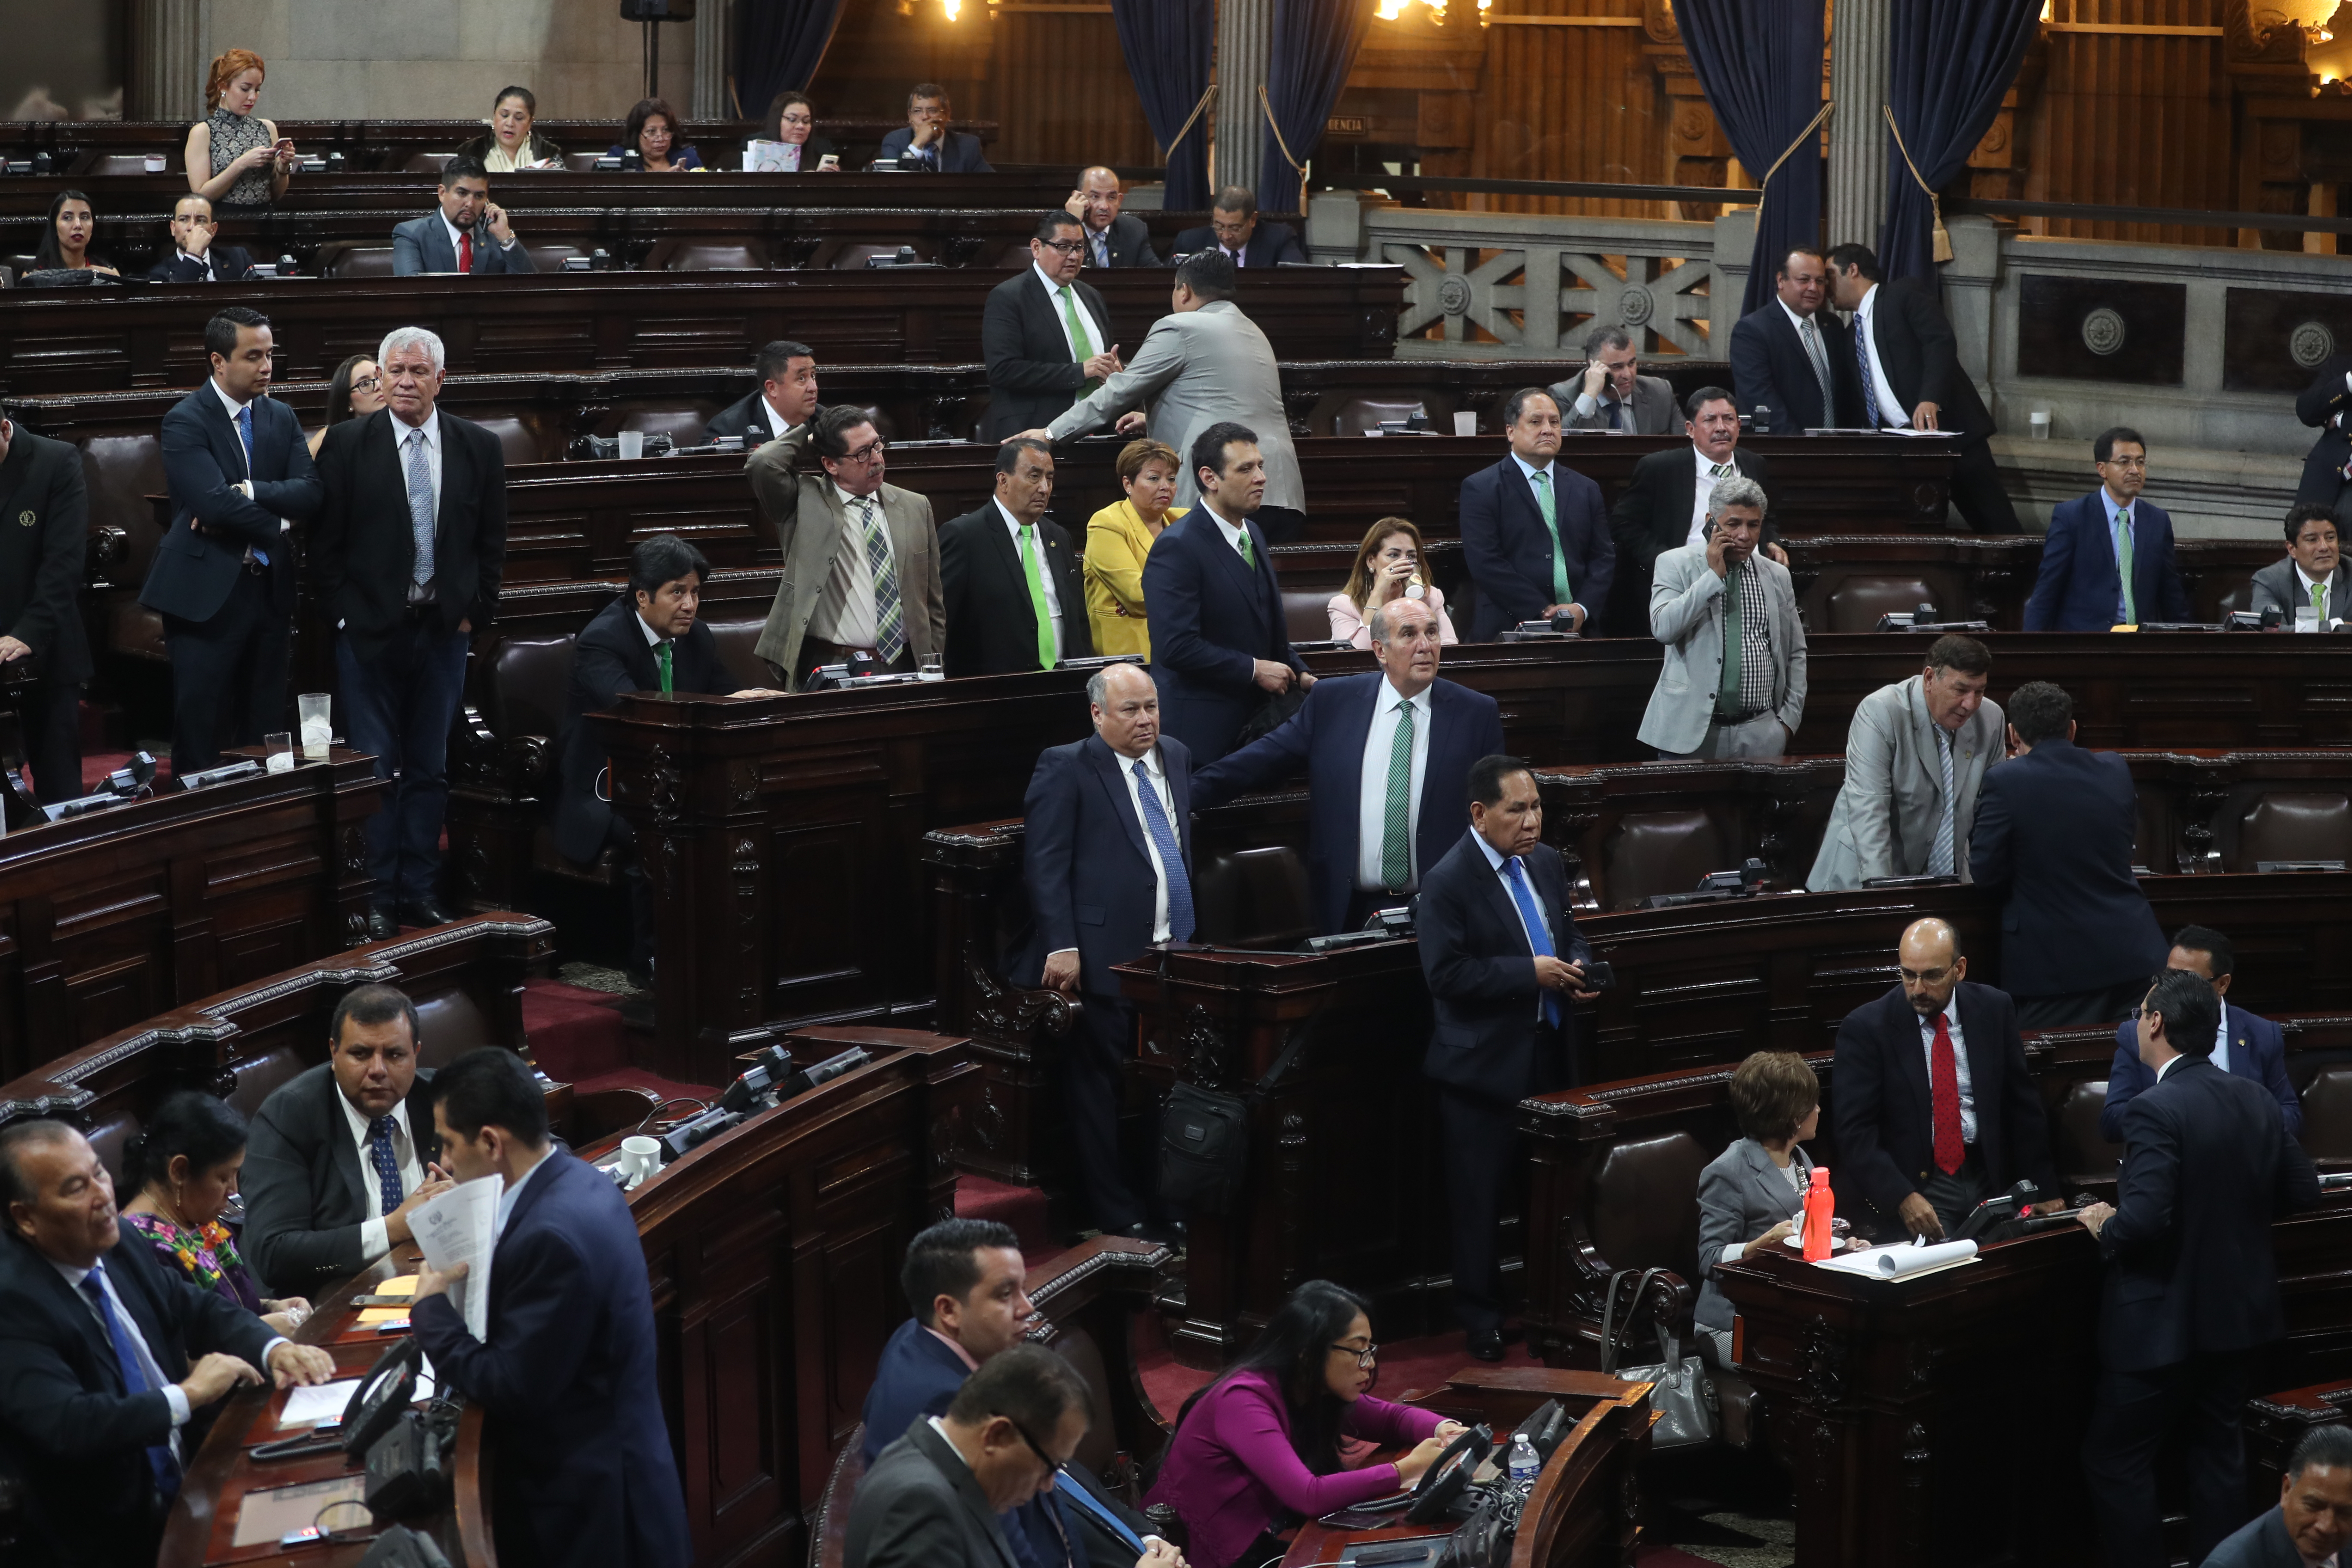 La ratificación de un acuerdo de tercer país seguro sería muy complicada señalan legisladores. (Foto Prensa Libre: Hemeroteca PL)